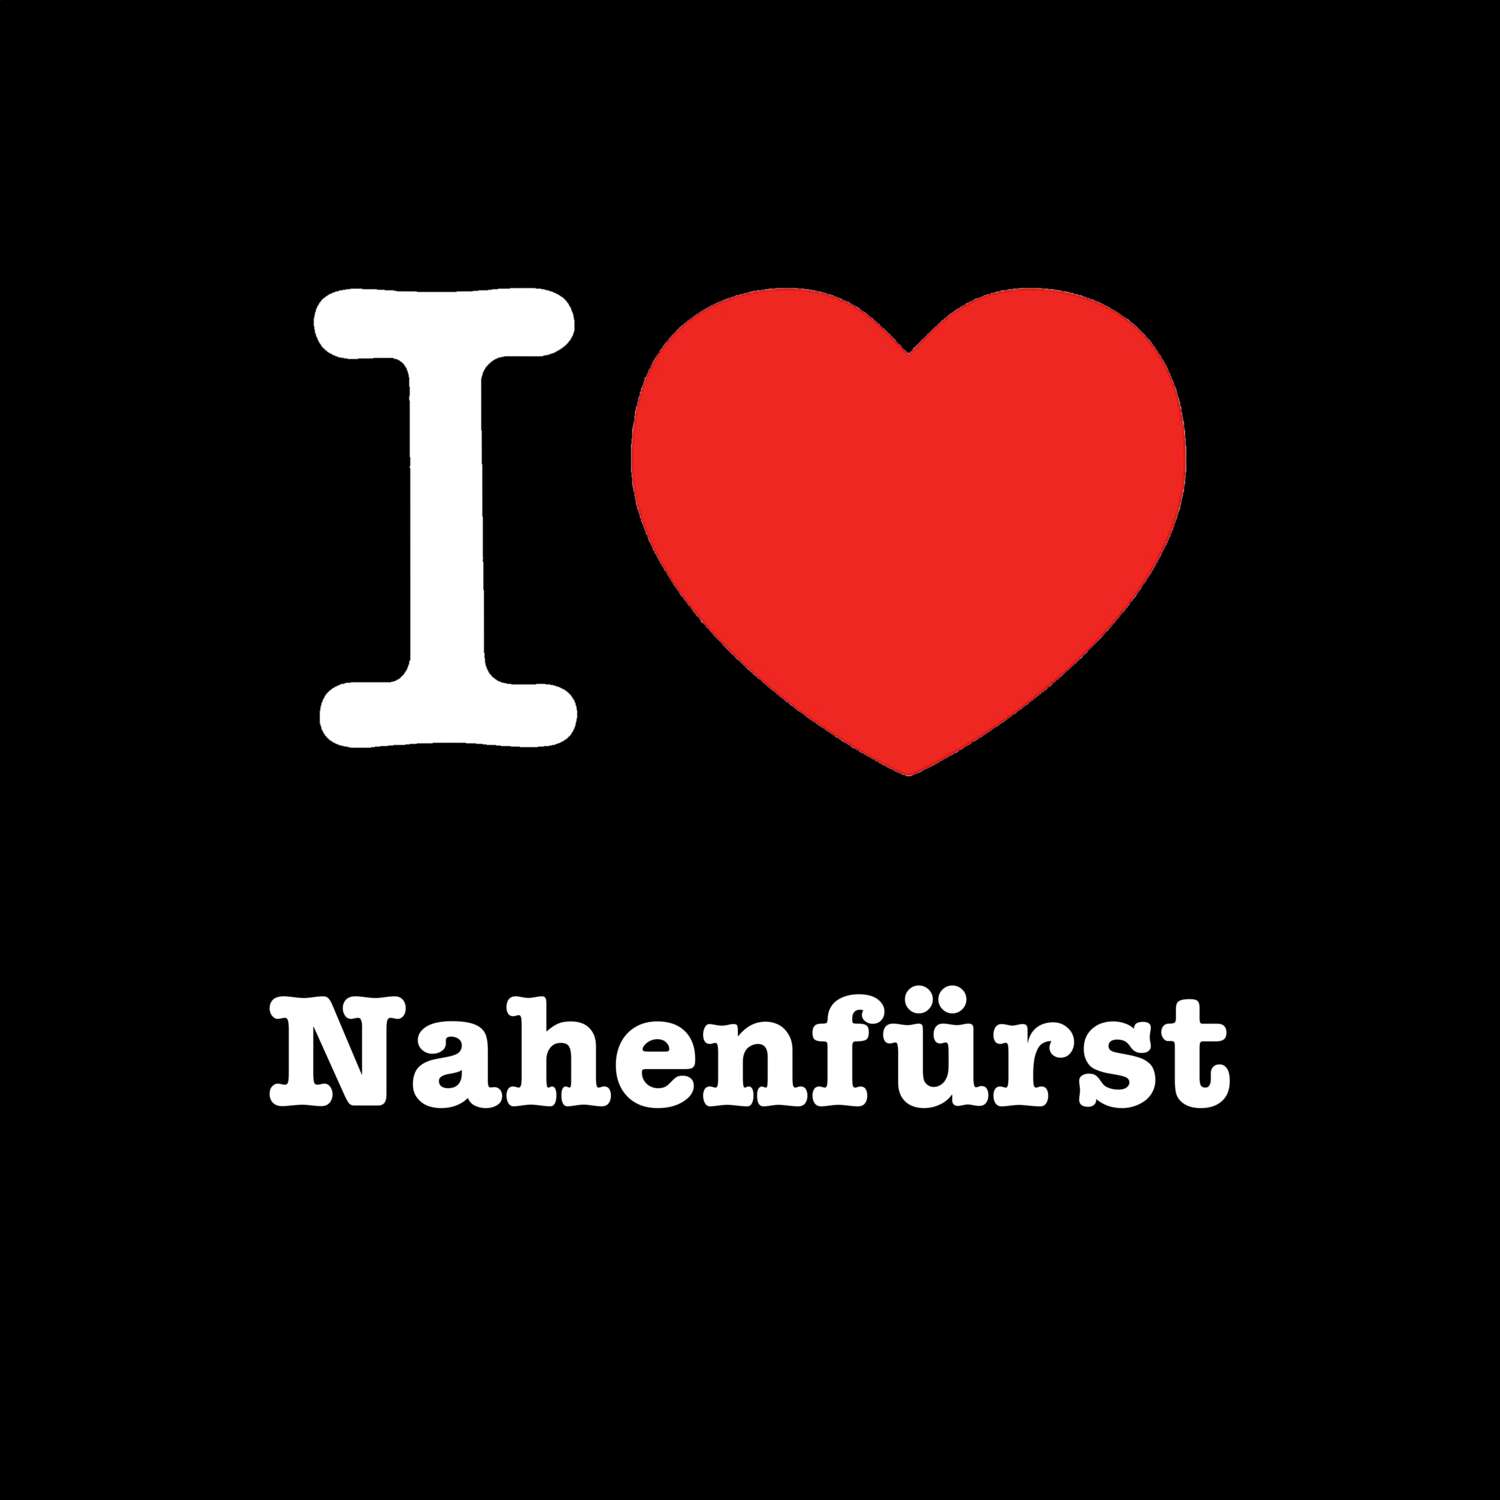 Nahenfürst T-Shirt »I love«